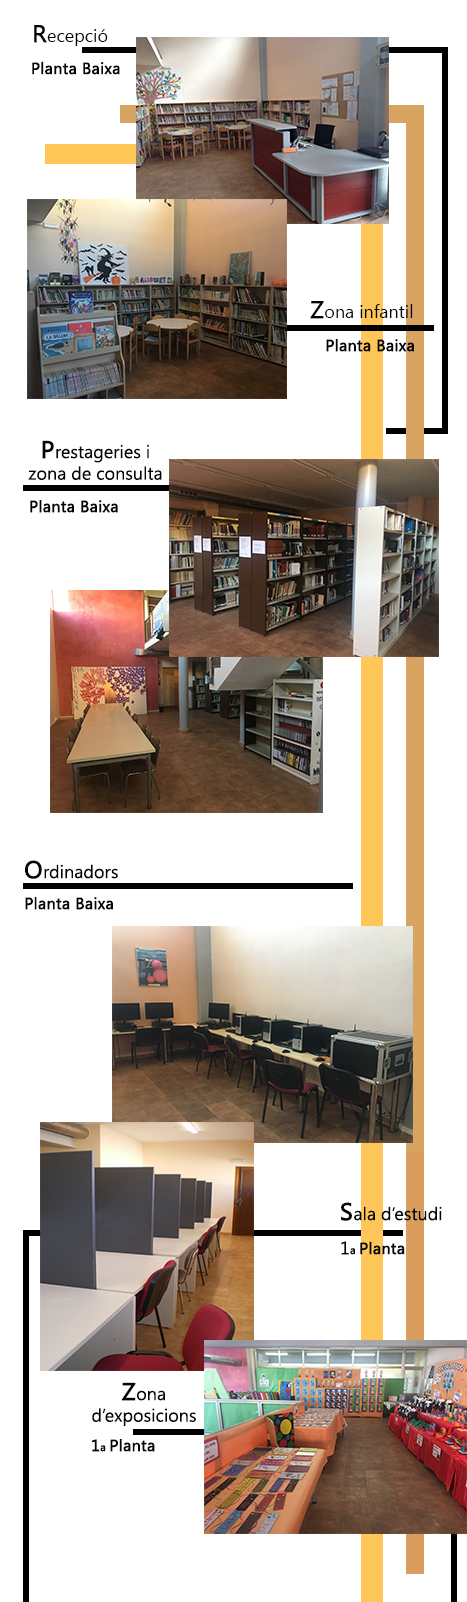 Biblioteca municipal de Faura